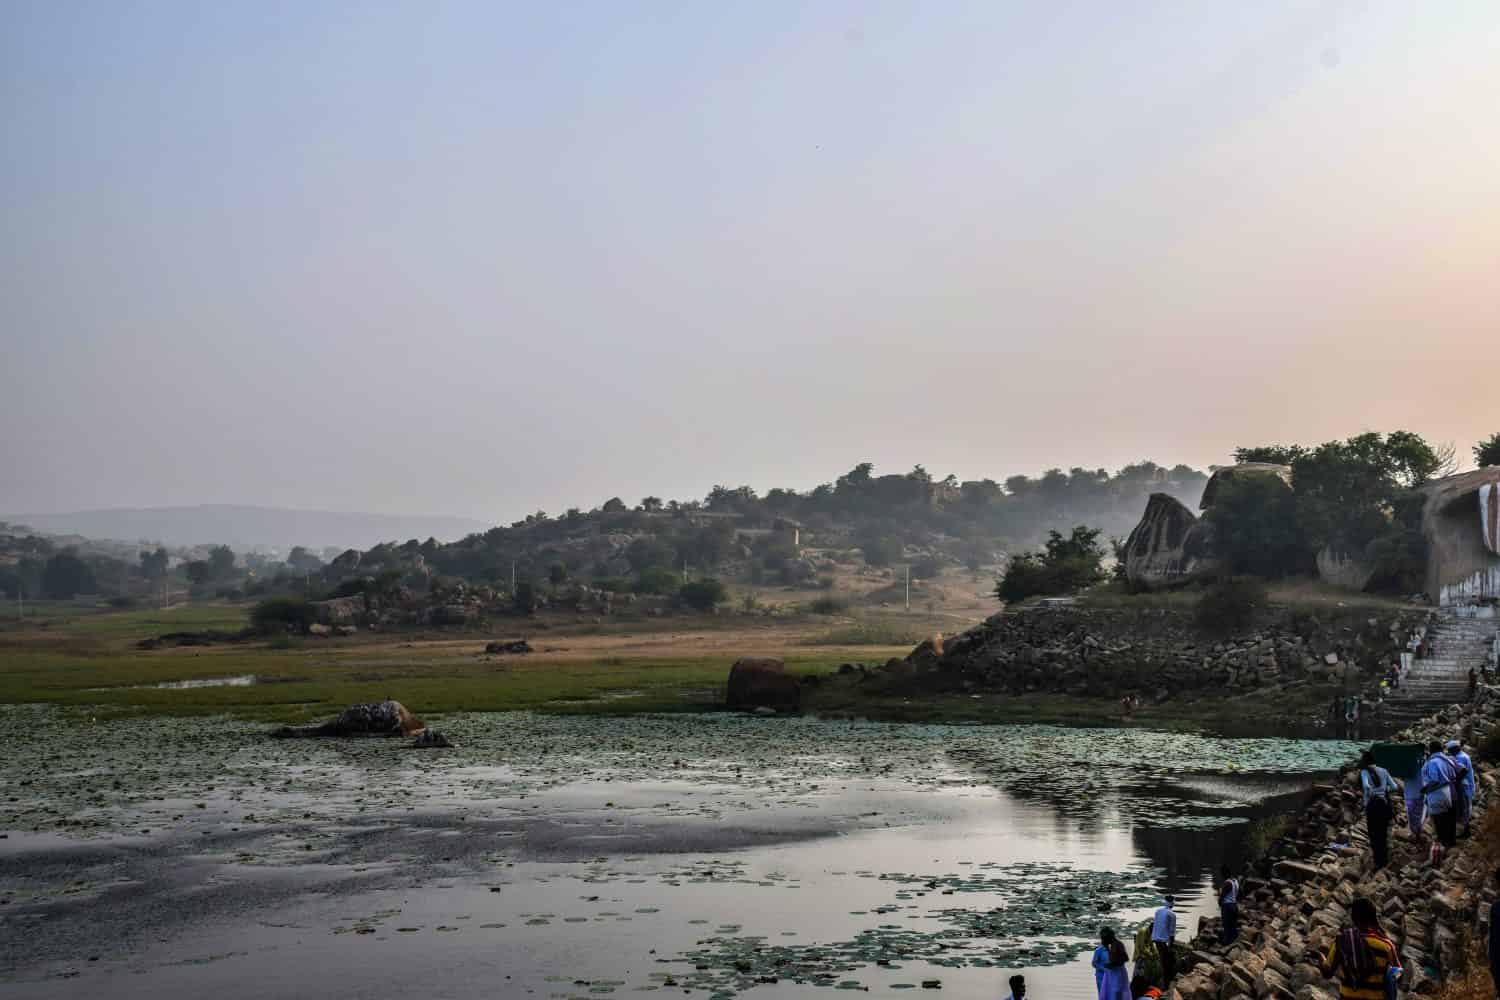   Foto d'archivio della riva del fiume sacro Bhima vicino al tempio di Lord Mallaya, persone che fanno il bagno rituale la mattina presto.  fiume circondato da rocce e alberi verdi, a Mailapur, Yadgir, Karnataka, India.